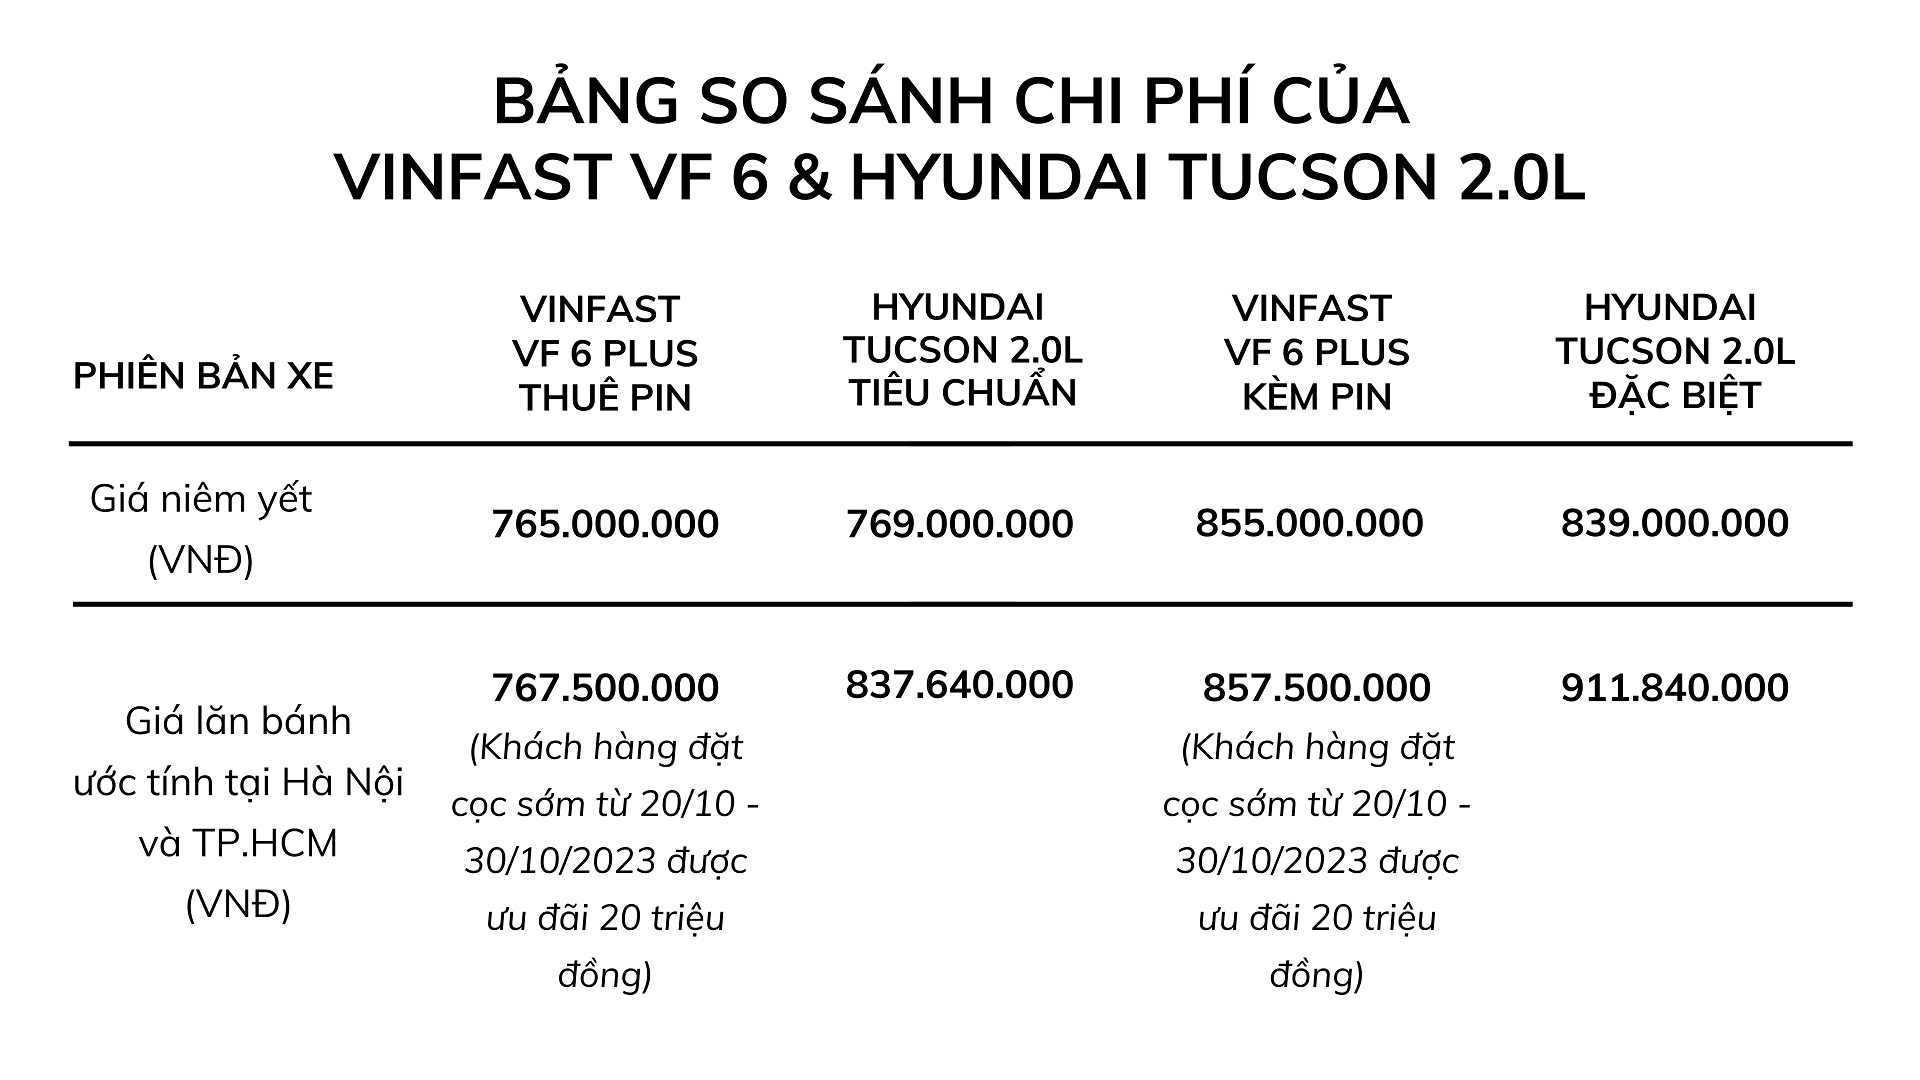 Hyundai Tucson giảm giá về ngang VinFast VF 6: Cuộc đua liệu có cân sức? - Ảnh 1.